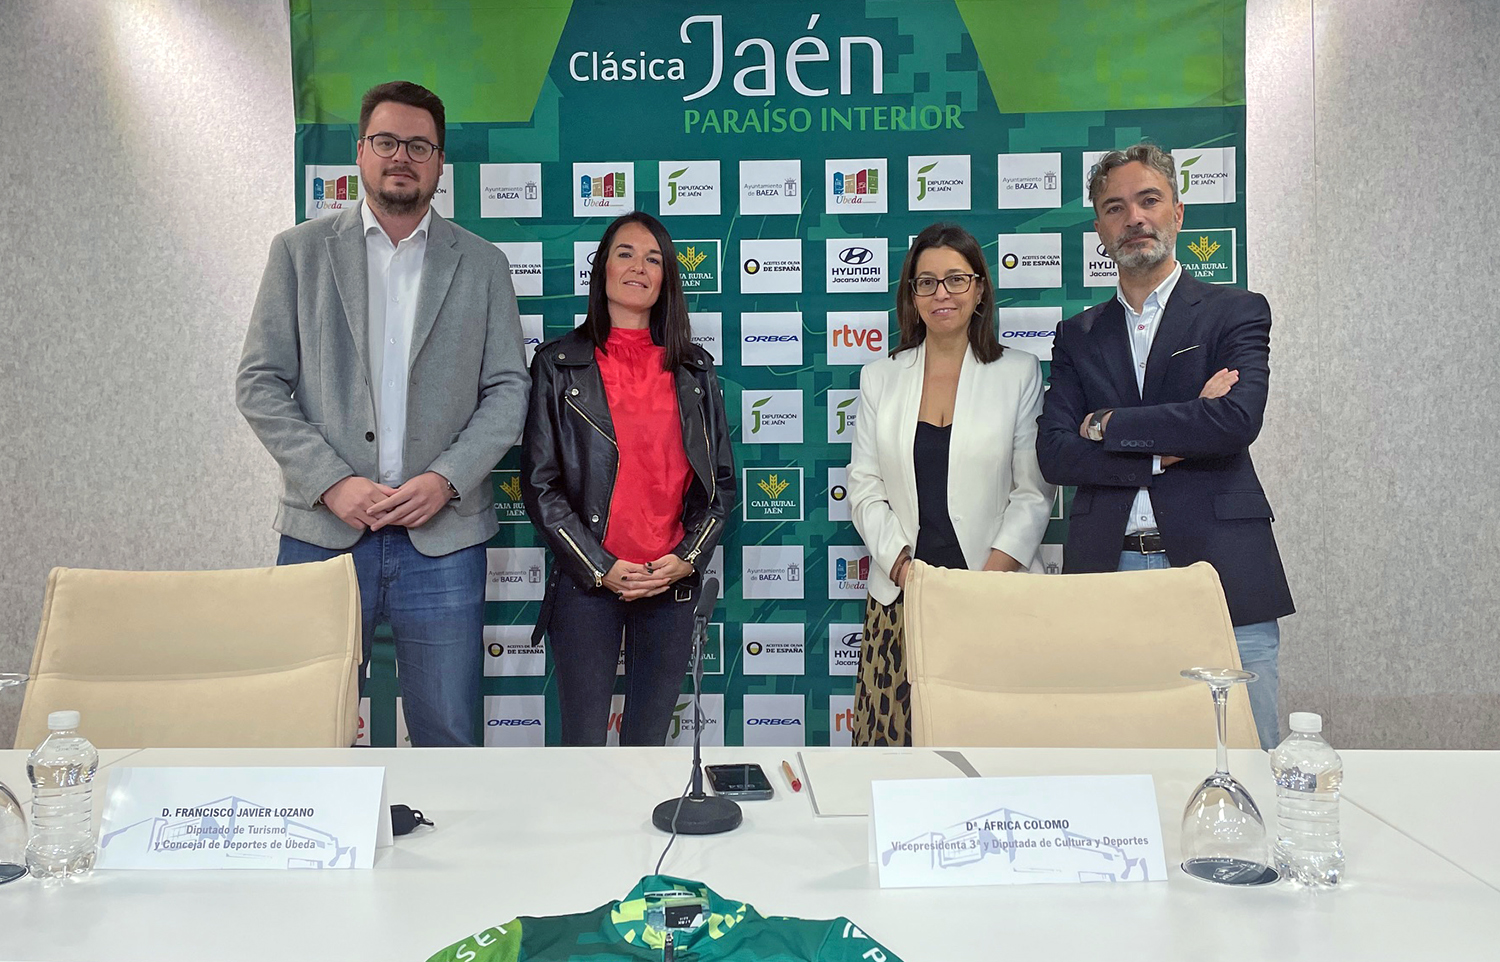 La Clásica Jaén Paraíso Interior que patrocina la Diputación concentrará el próximo lunes la atención del ciclismo mundial